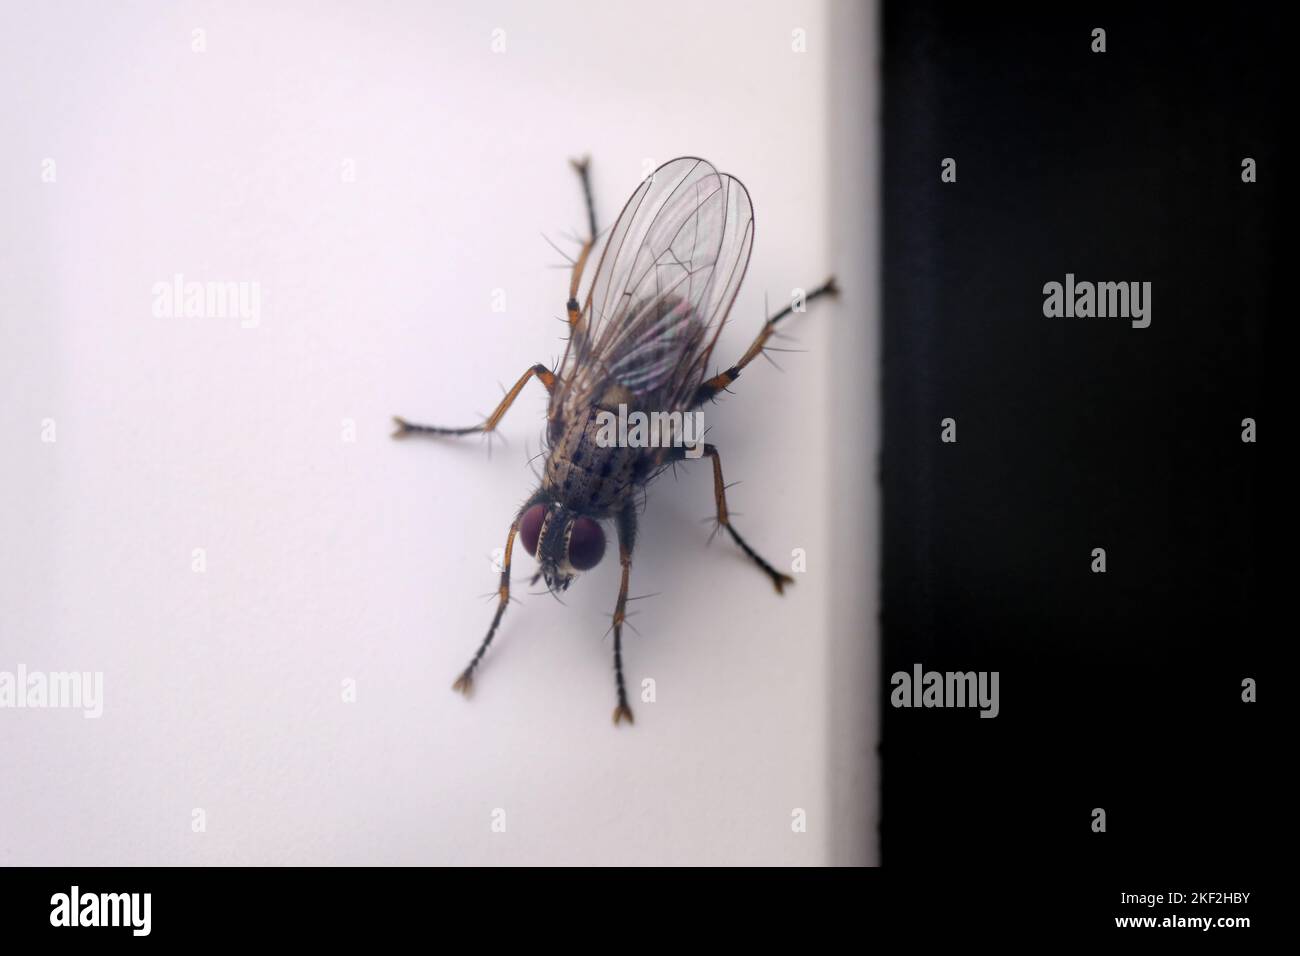 Fliegen Sie hoch oben auf der UPVC-Tür. Ich sehe, wie ich es fotografiere. Makrobild fliegender Insekten. Stockfoto